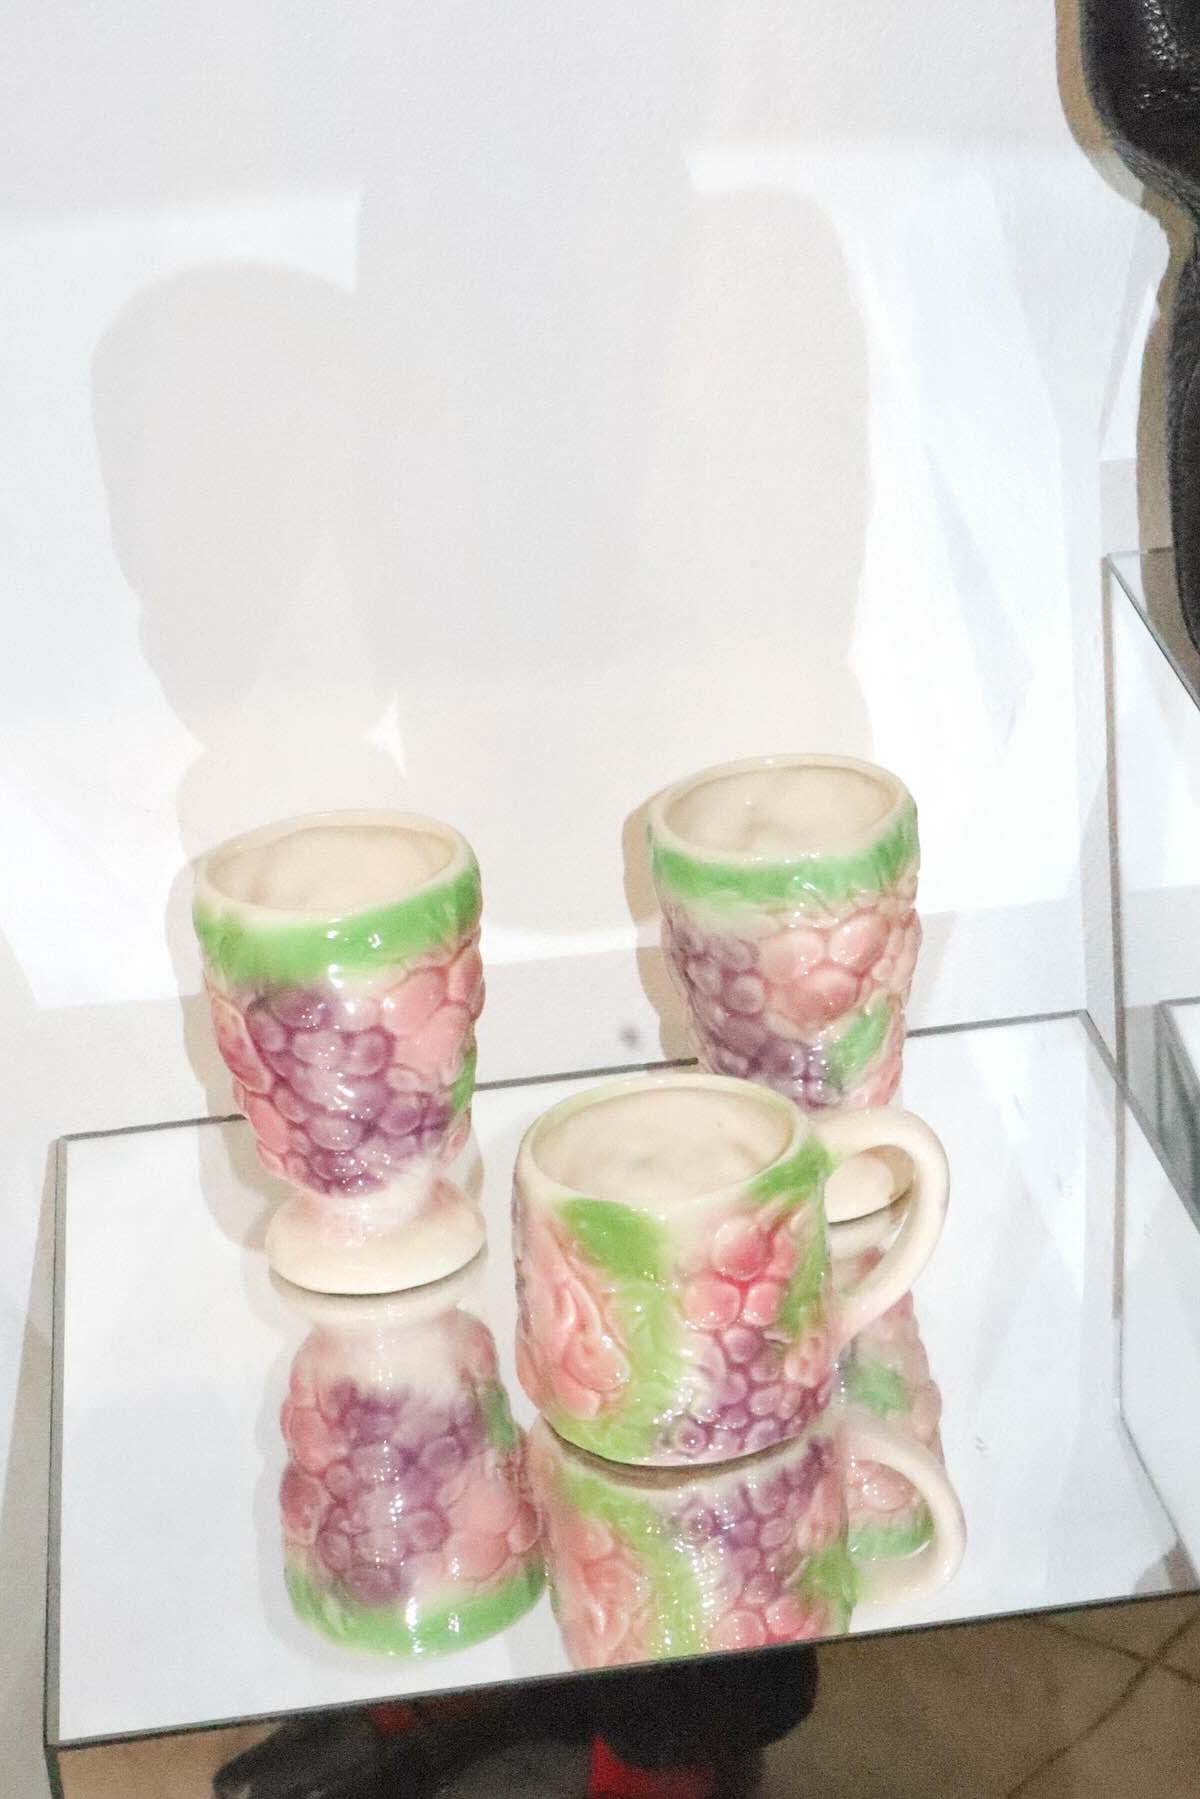 Wilde vintage home goods, vintage porcelain set